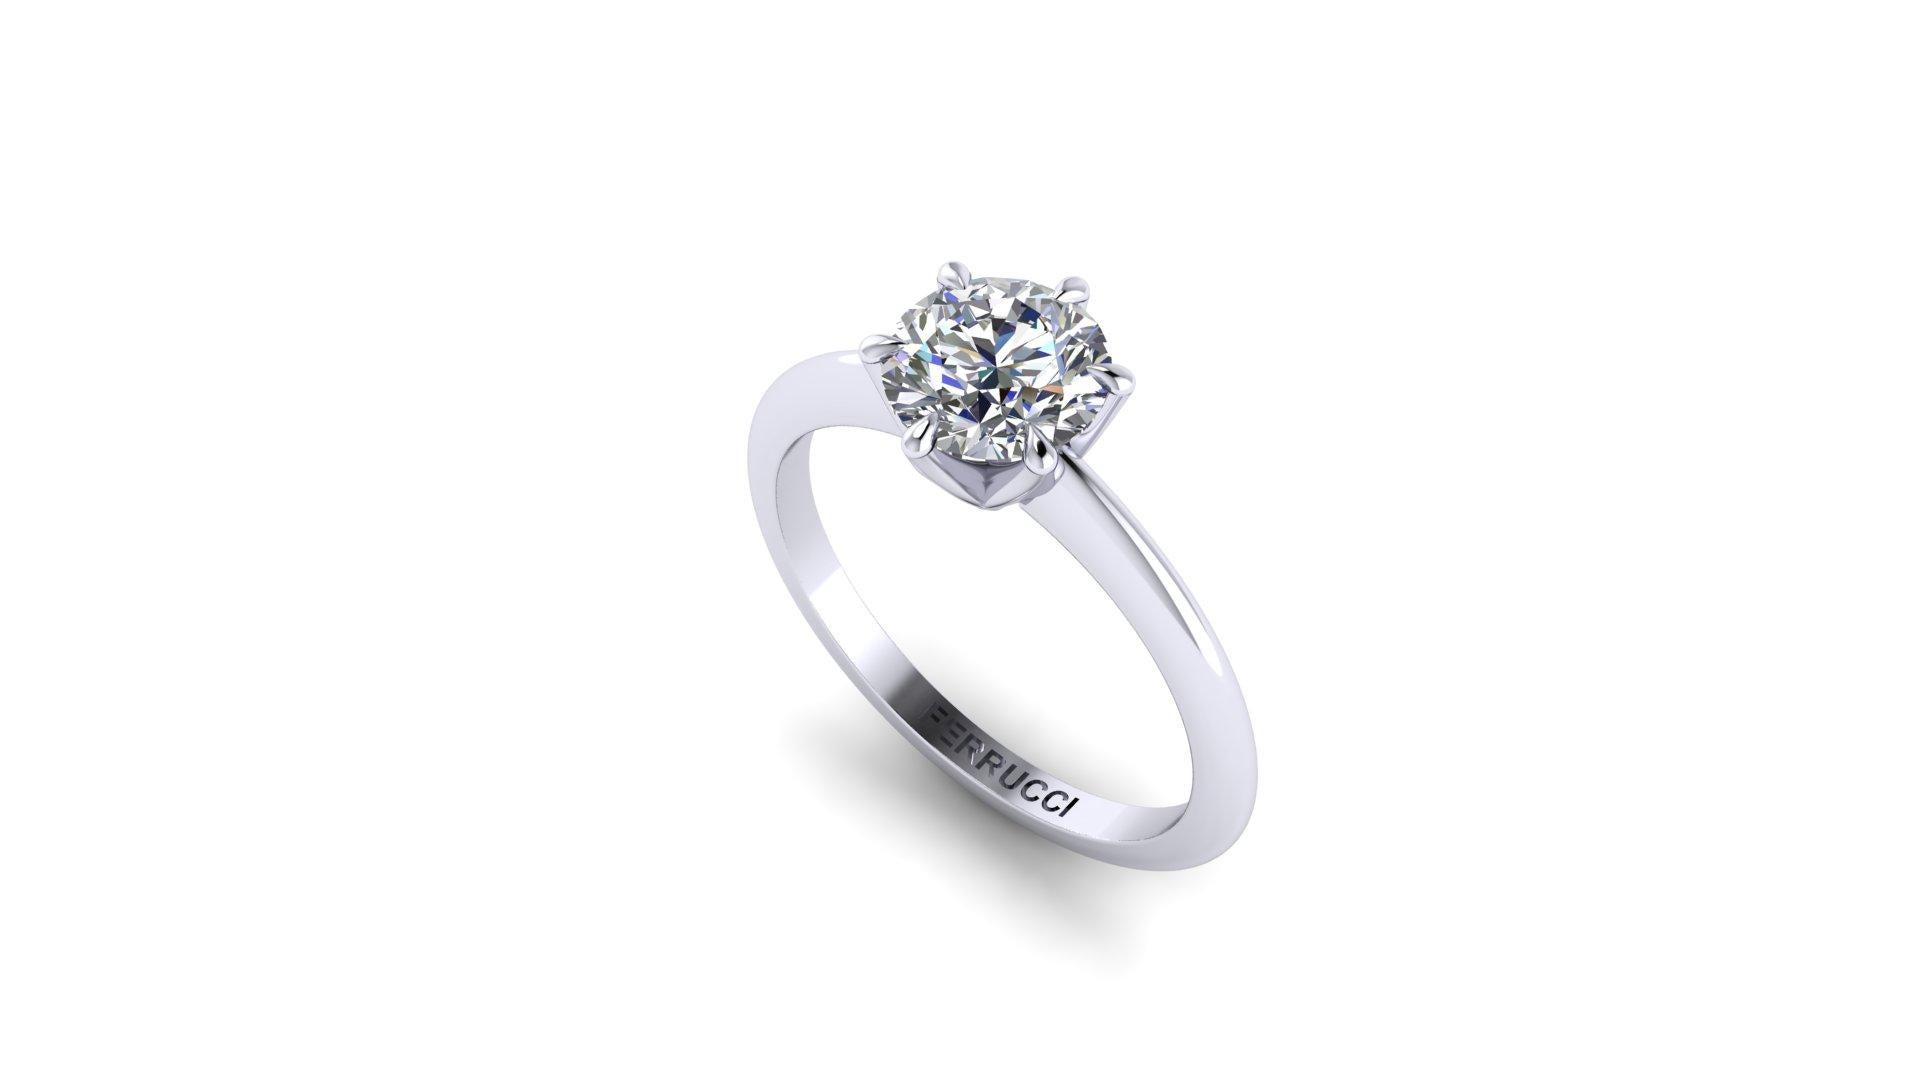 GIA-zertifiziert 1,06 Runde Diamant, G Farbe, VVS2 Klarheit mit Triple Excellent Specs, in einer hohen Nachfrage minimalistisch, dünn, niedrig Einstellung, vier Kralle Zacken, abgerundeten Draht Schaft.
Dieser Ring ist eine Standardgröße 6 und